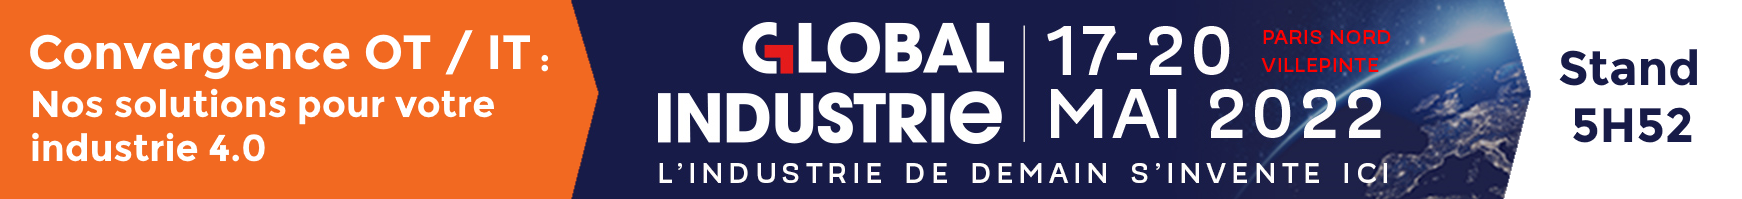 AGILiCOM - Global industrie 2022